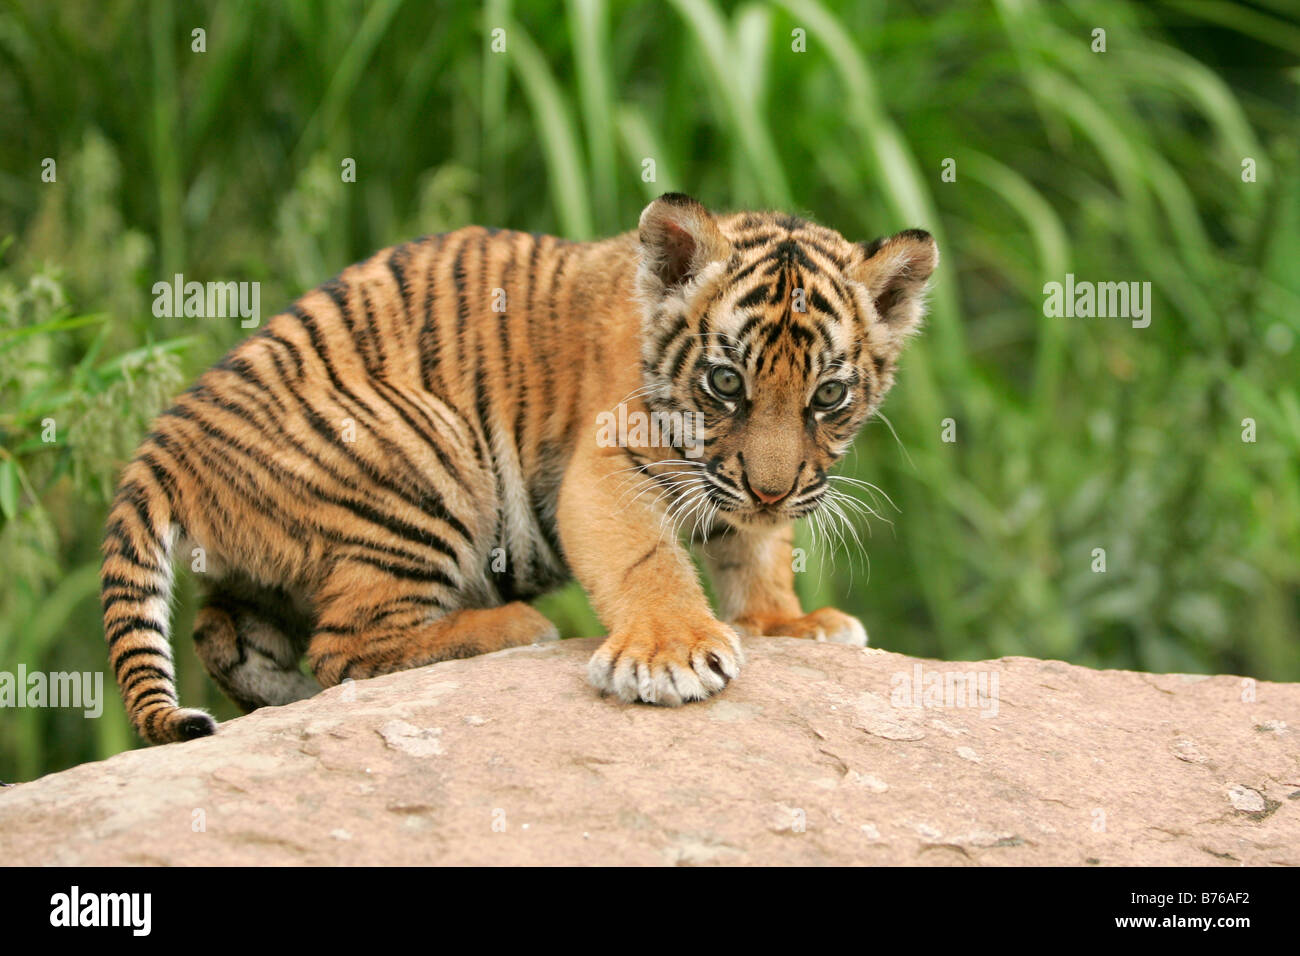 Sumatratiger Jungtier Sumatra Tiger Panthera tigris sumatrae Sumatran Tiger Stock Photo